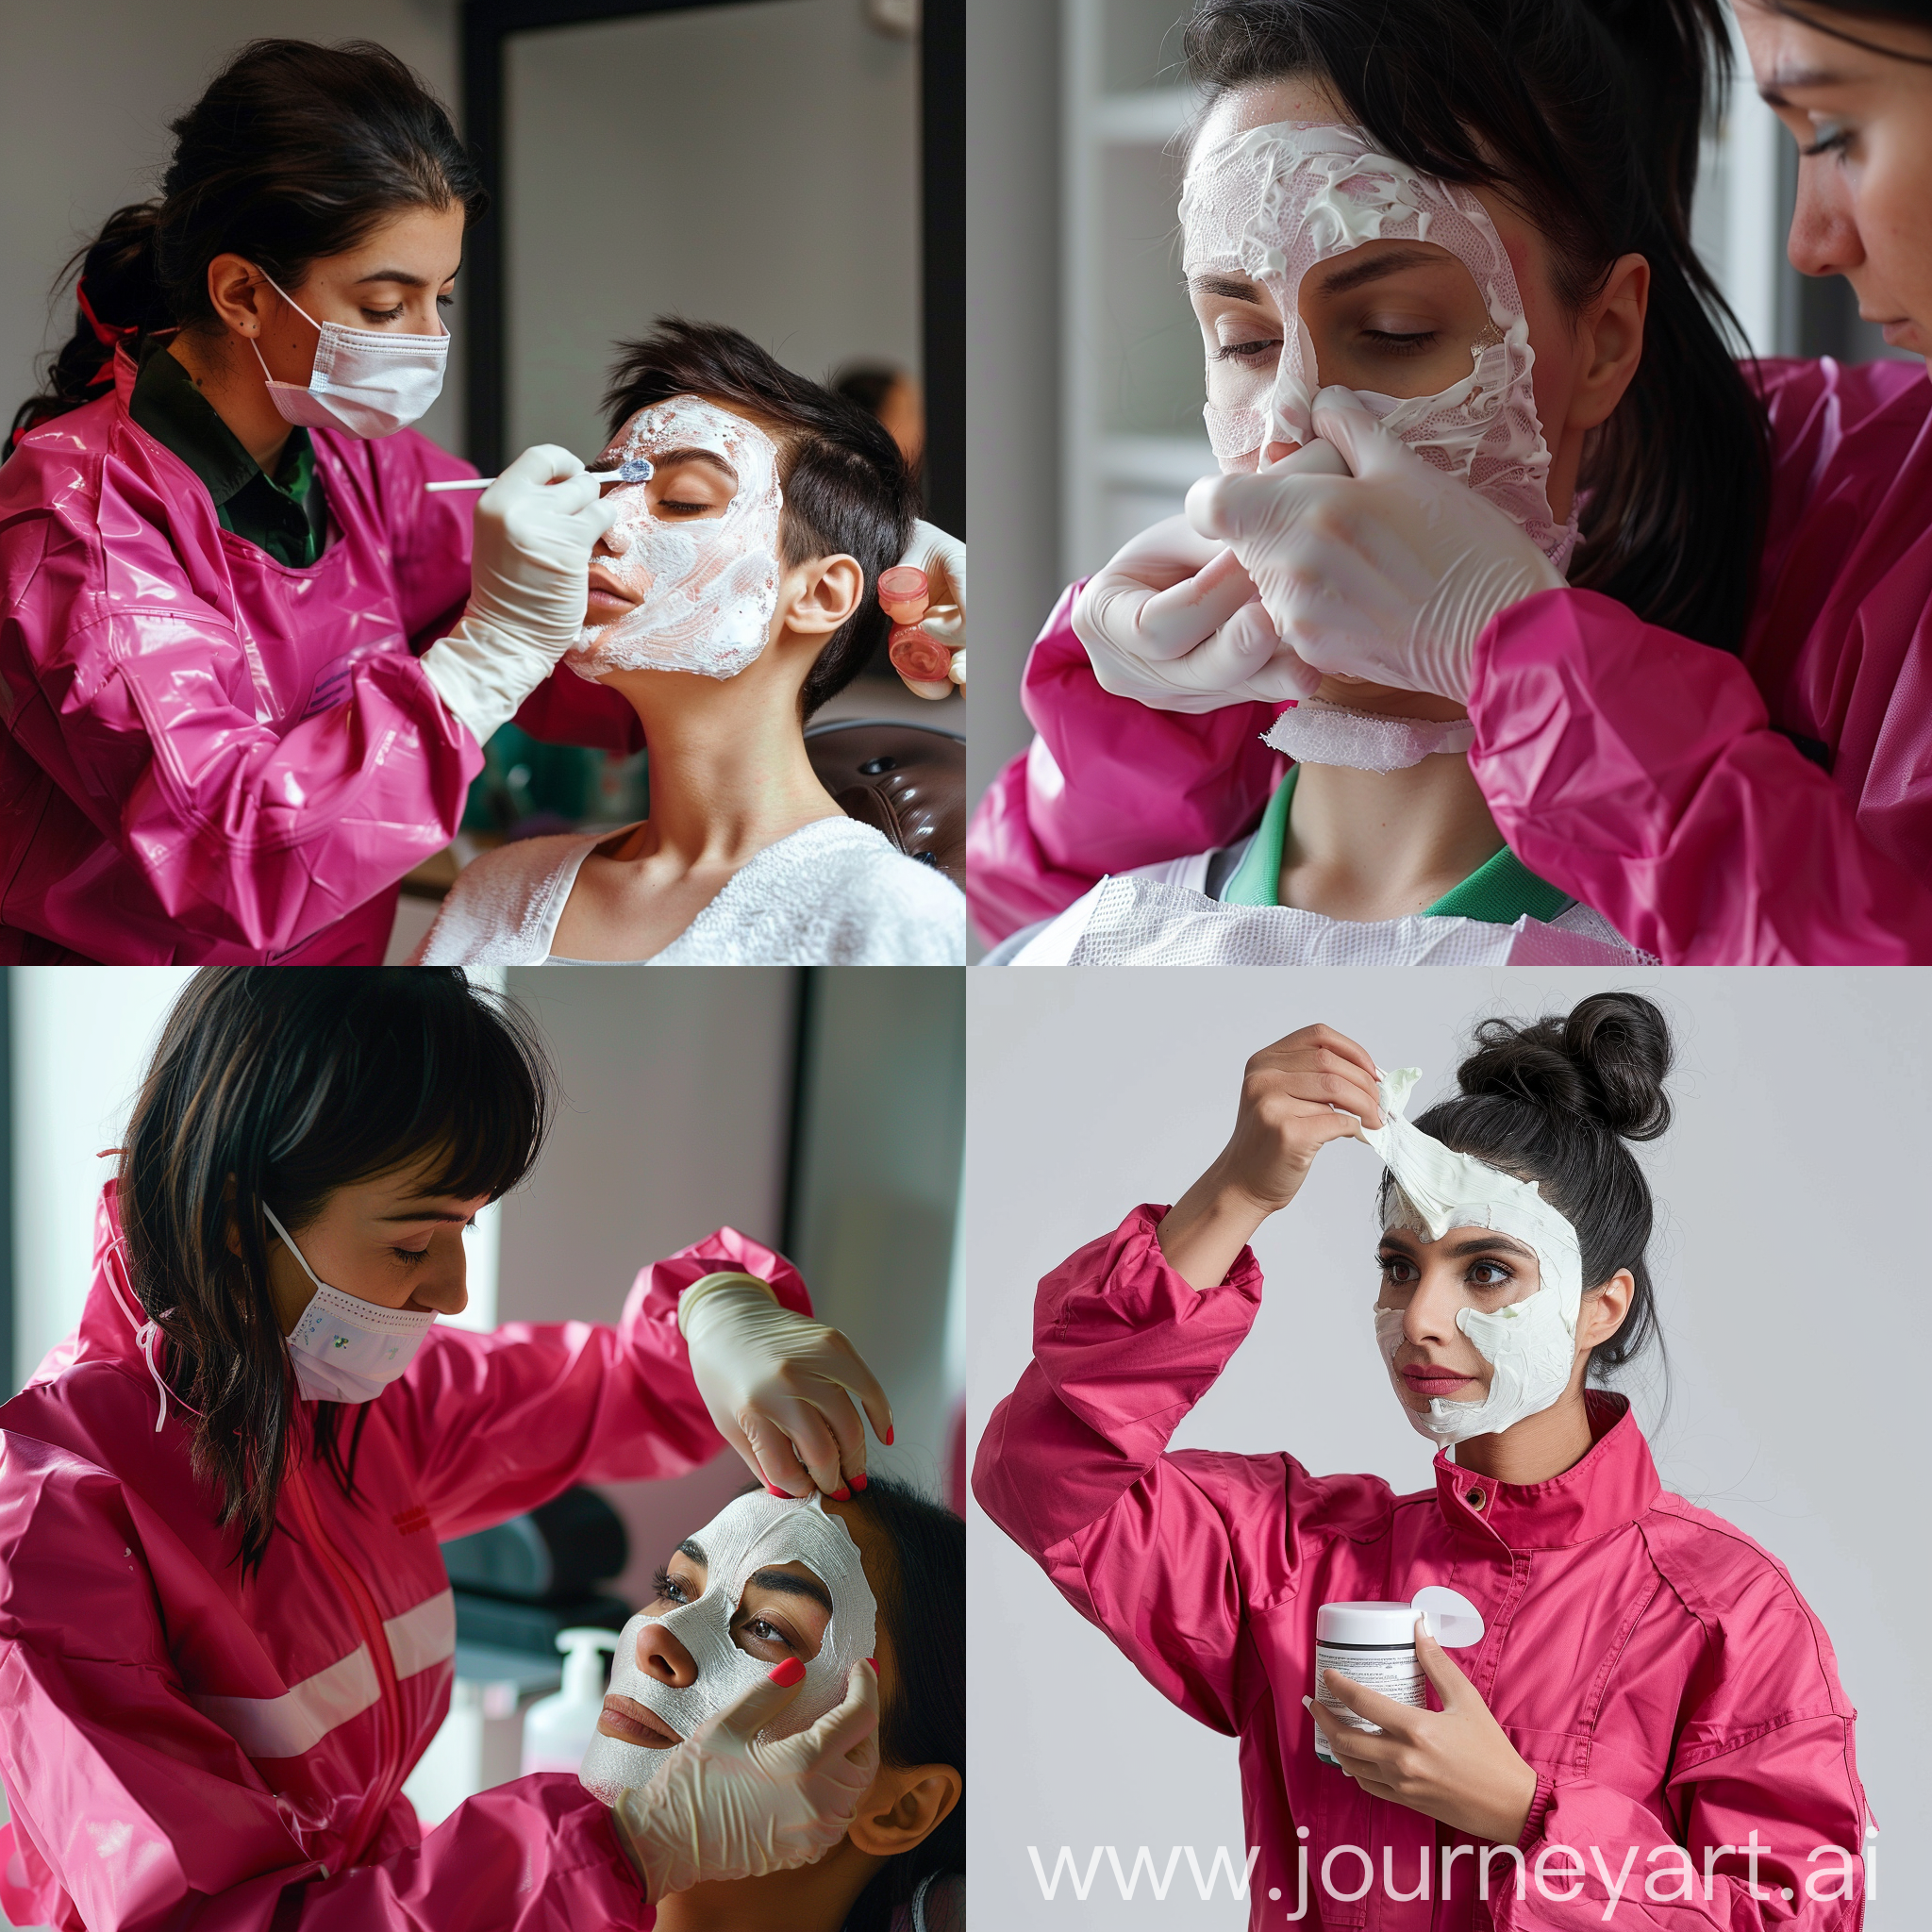 Косметолог с тёмными волосами в ярком малиновом медицинском костюме наносит маску на лицо клиентке